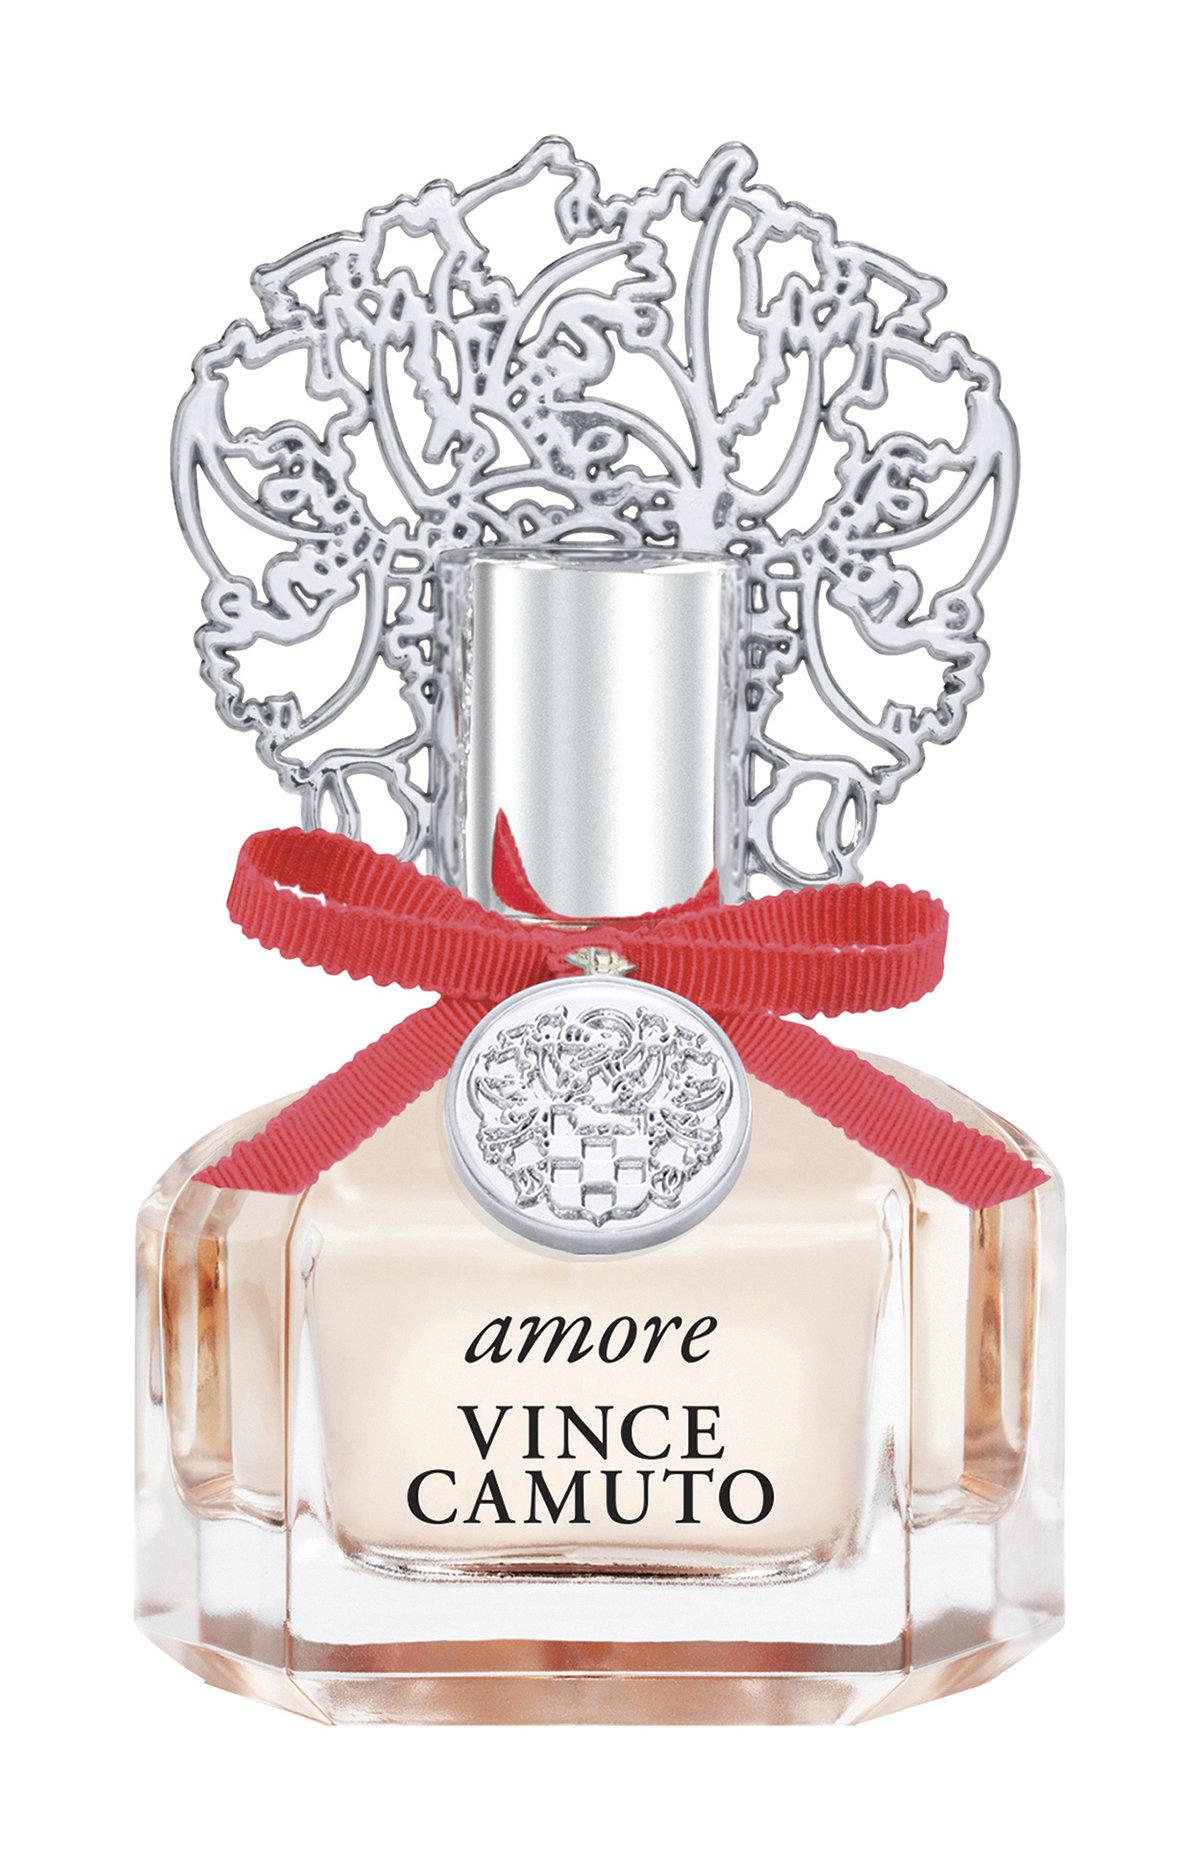 Парфюмерная вода Vince Camuto Amore Eau de Parfum для женщин, 100 мл